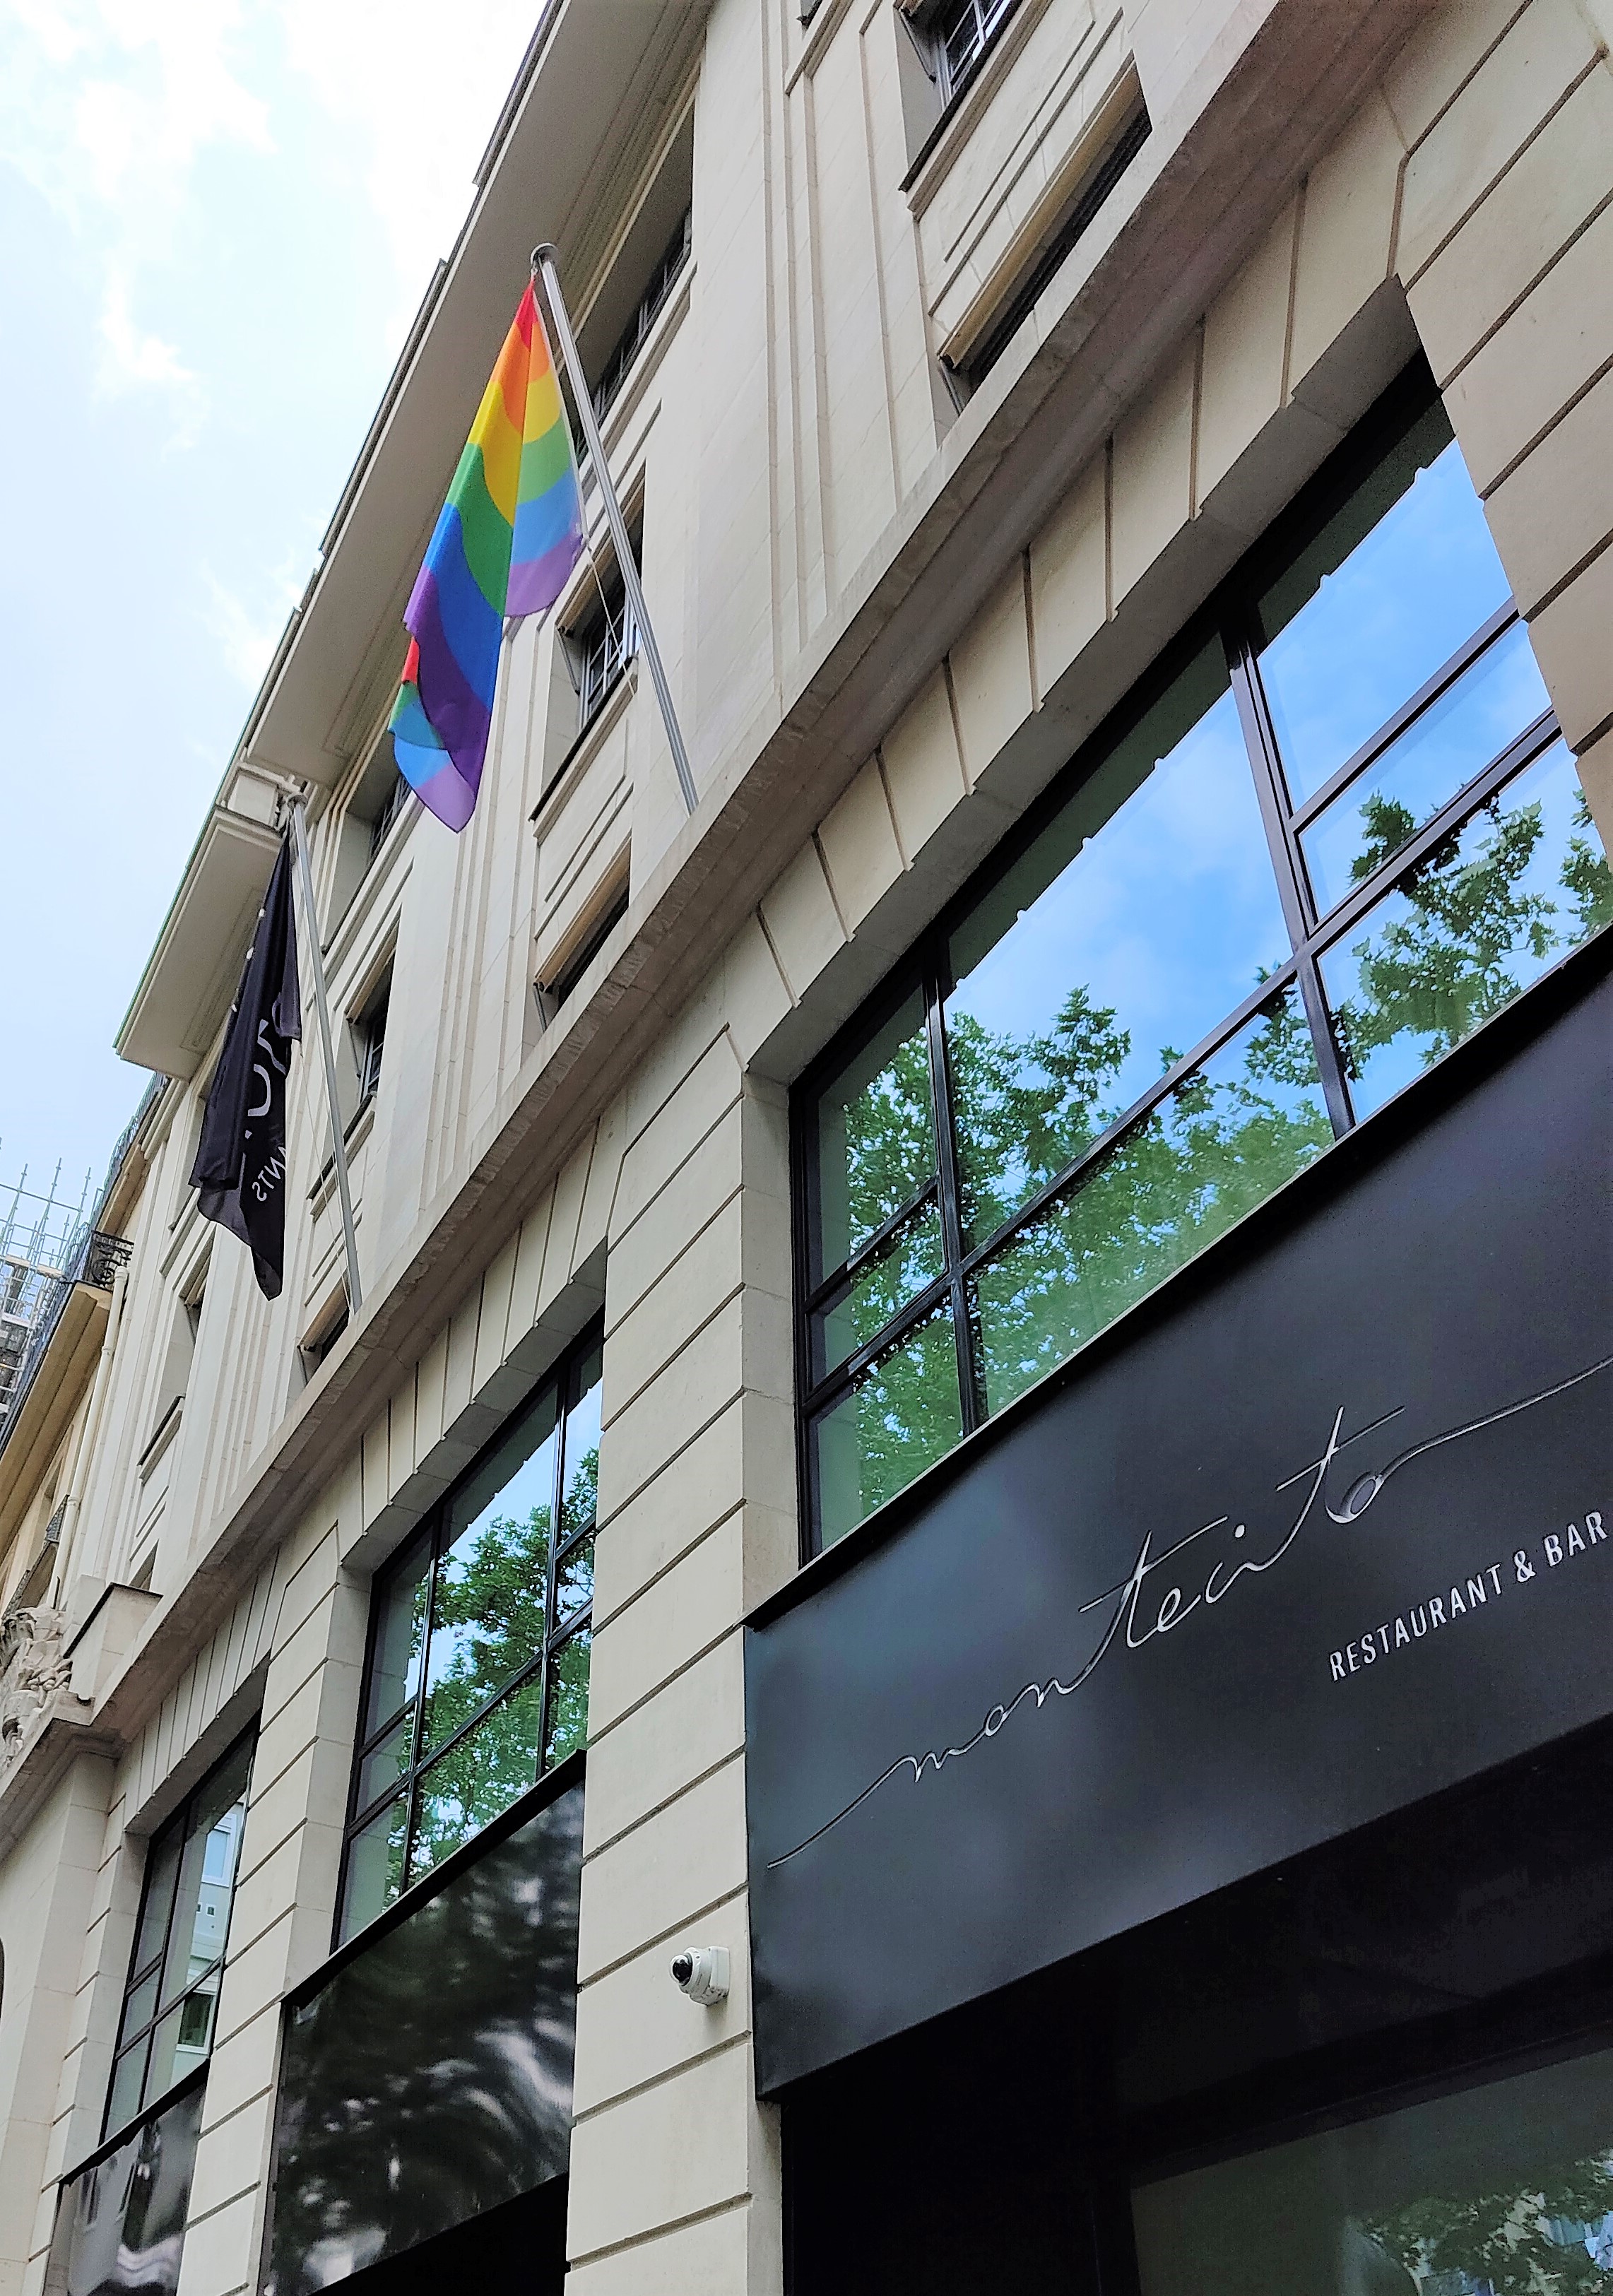 Le drapeau LGBTQIA+ flotte en façade du Kimpton St Honoré pendant tout le mois de juin.